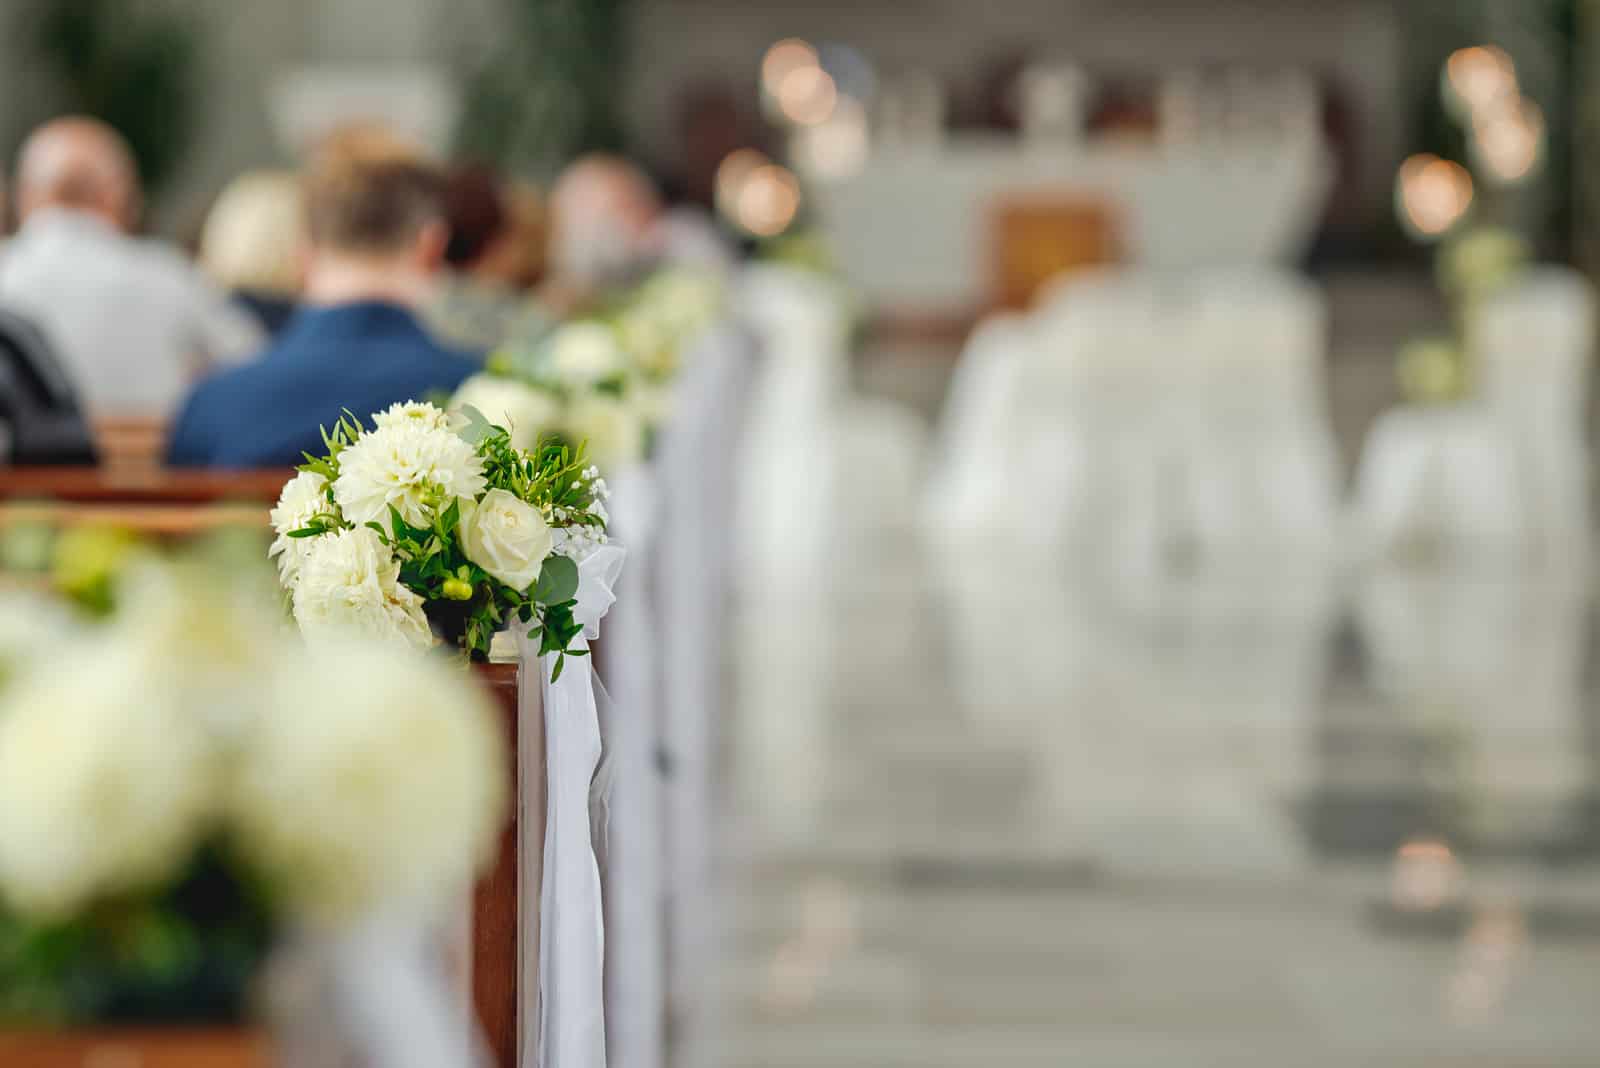 kirchliche Hochzeitsdekoration weiße Blumen